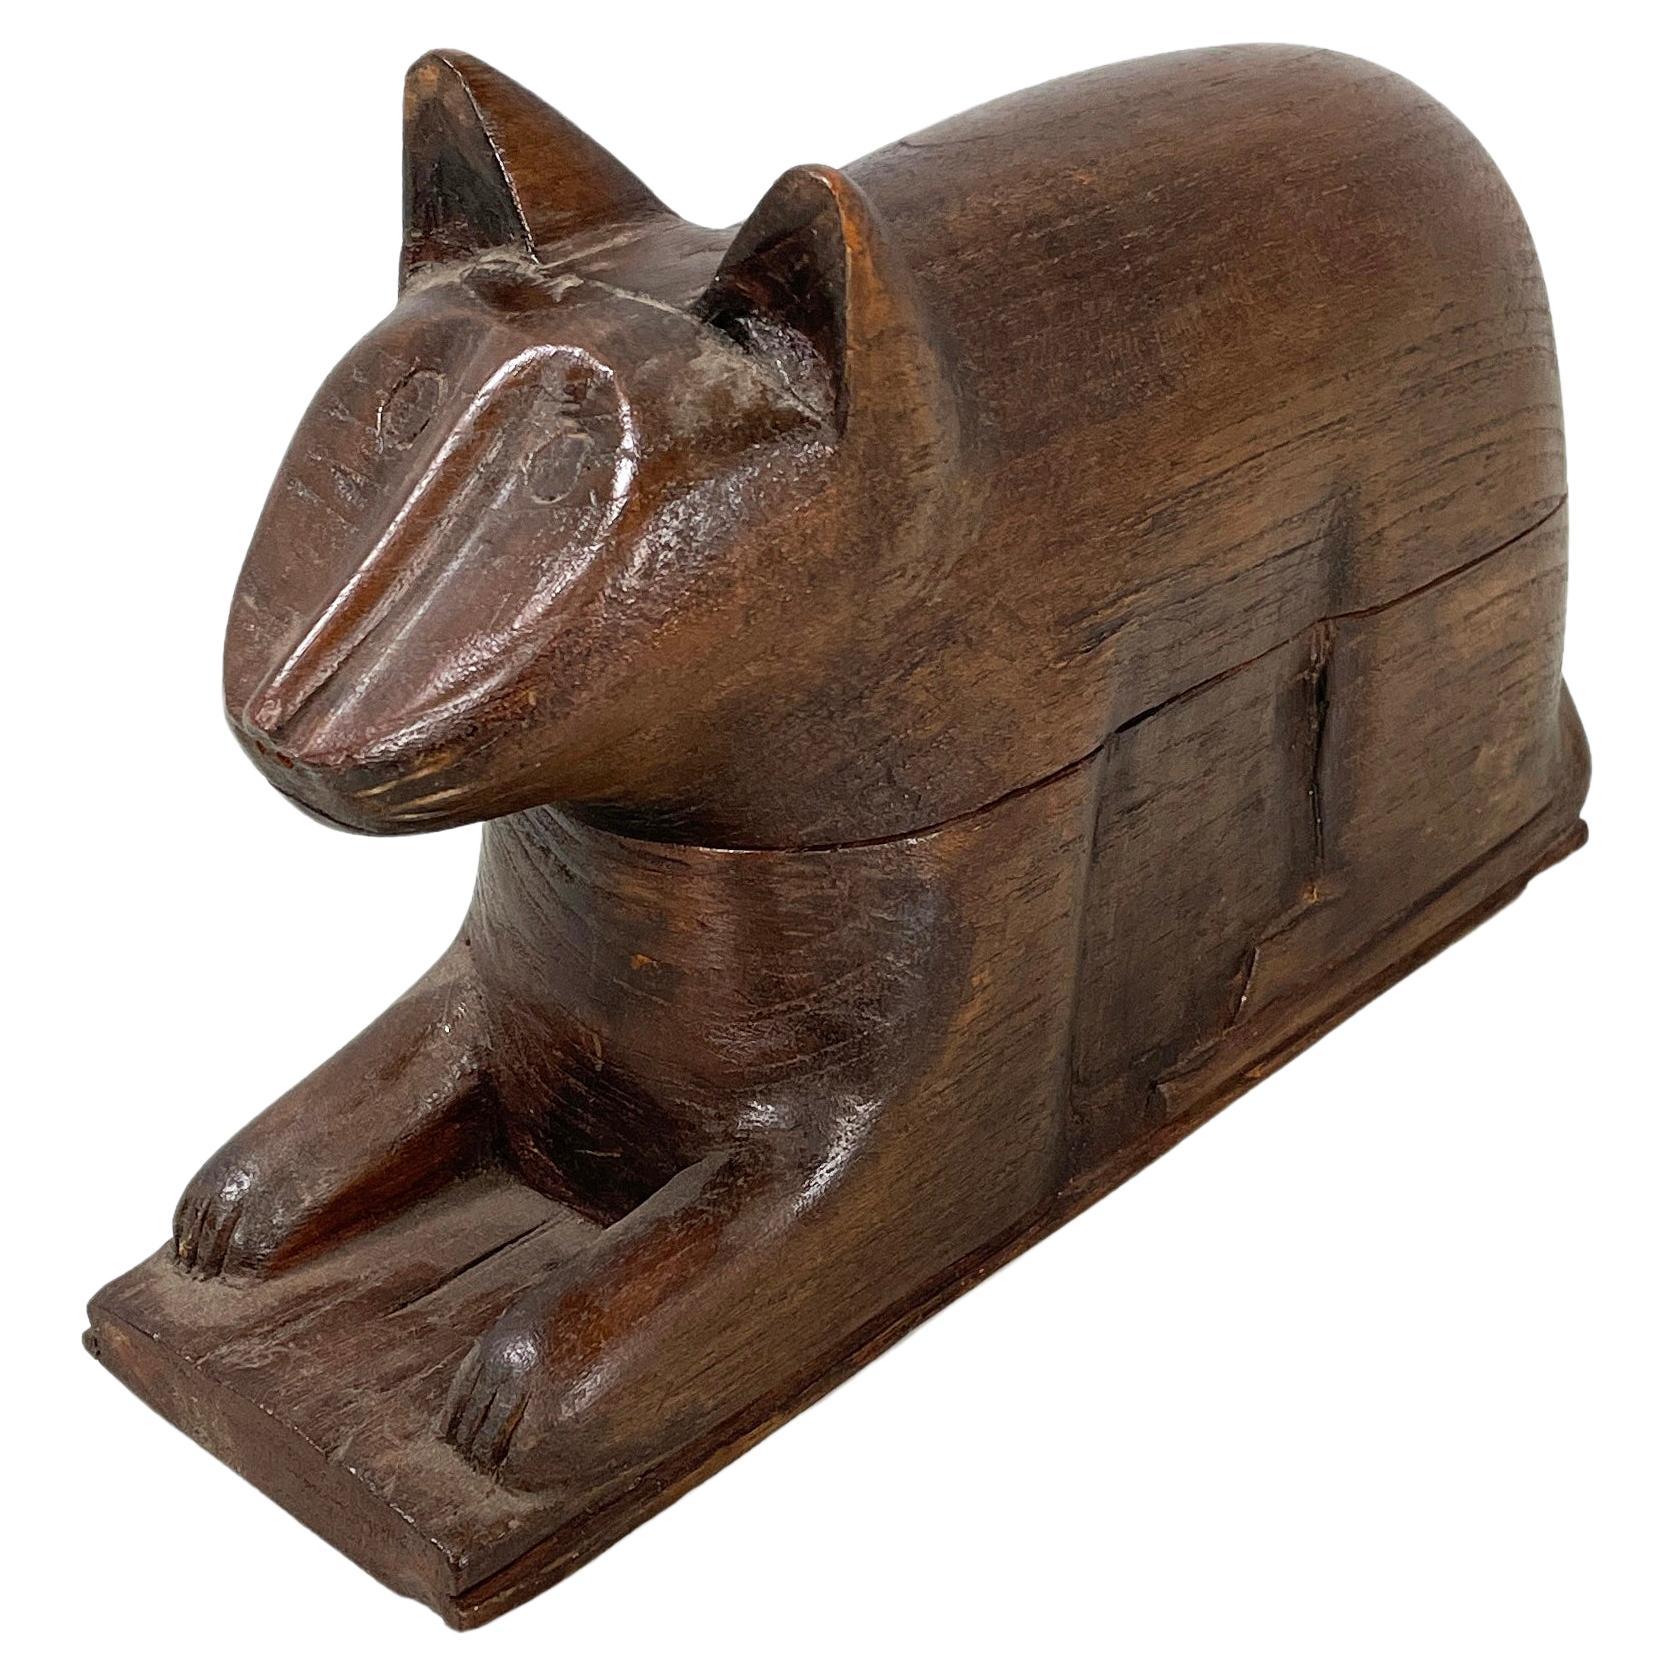 Chinesische antike hölzerne Katzen-Schmuckschatulle oder Objekthalter, 1920er Jahre